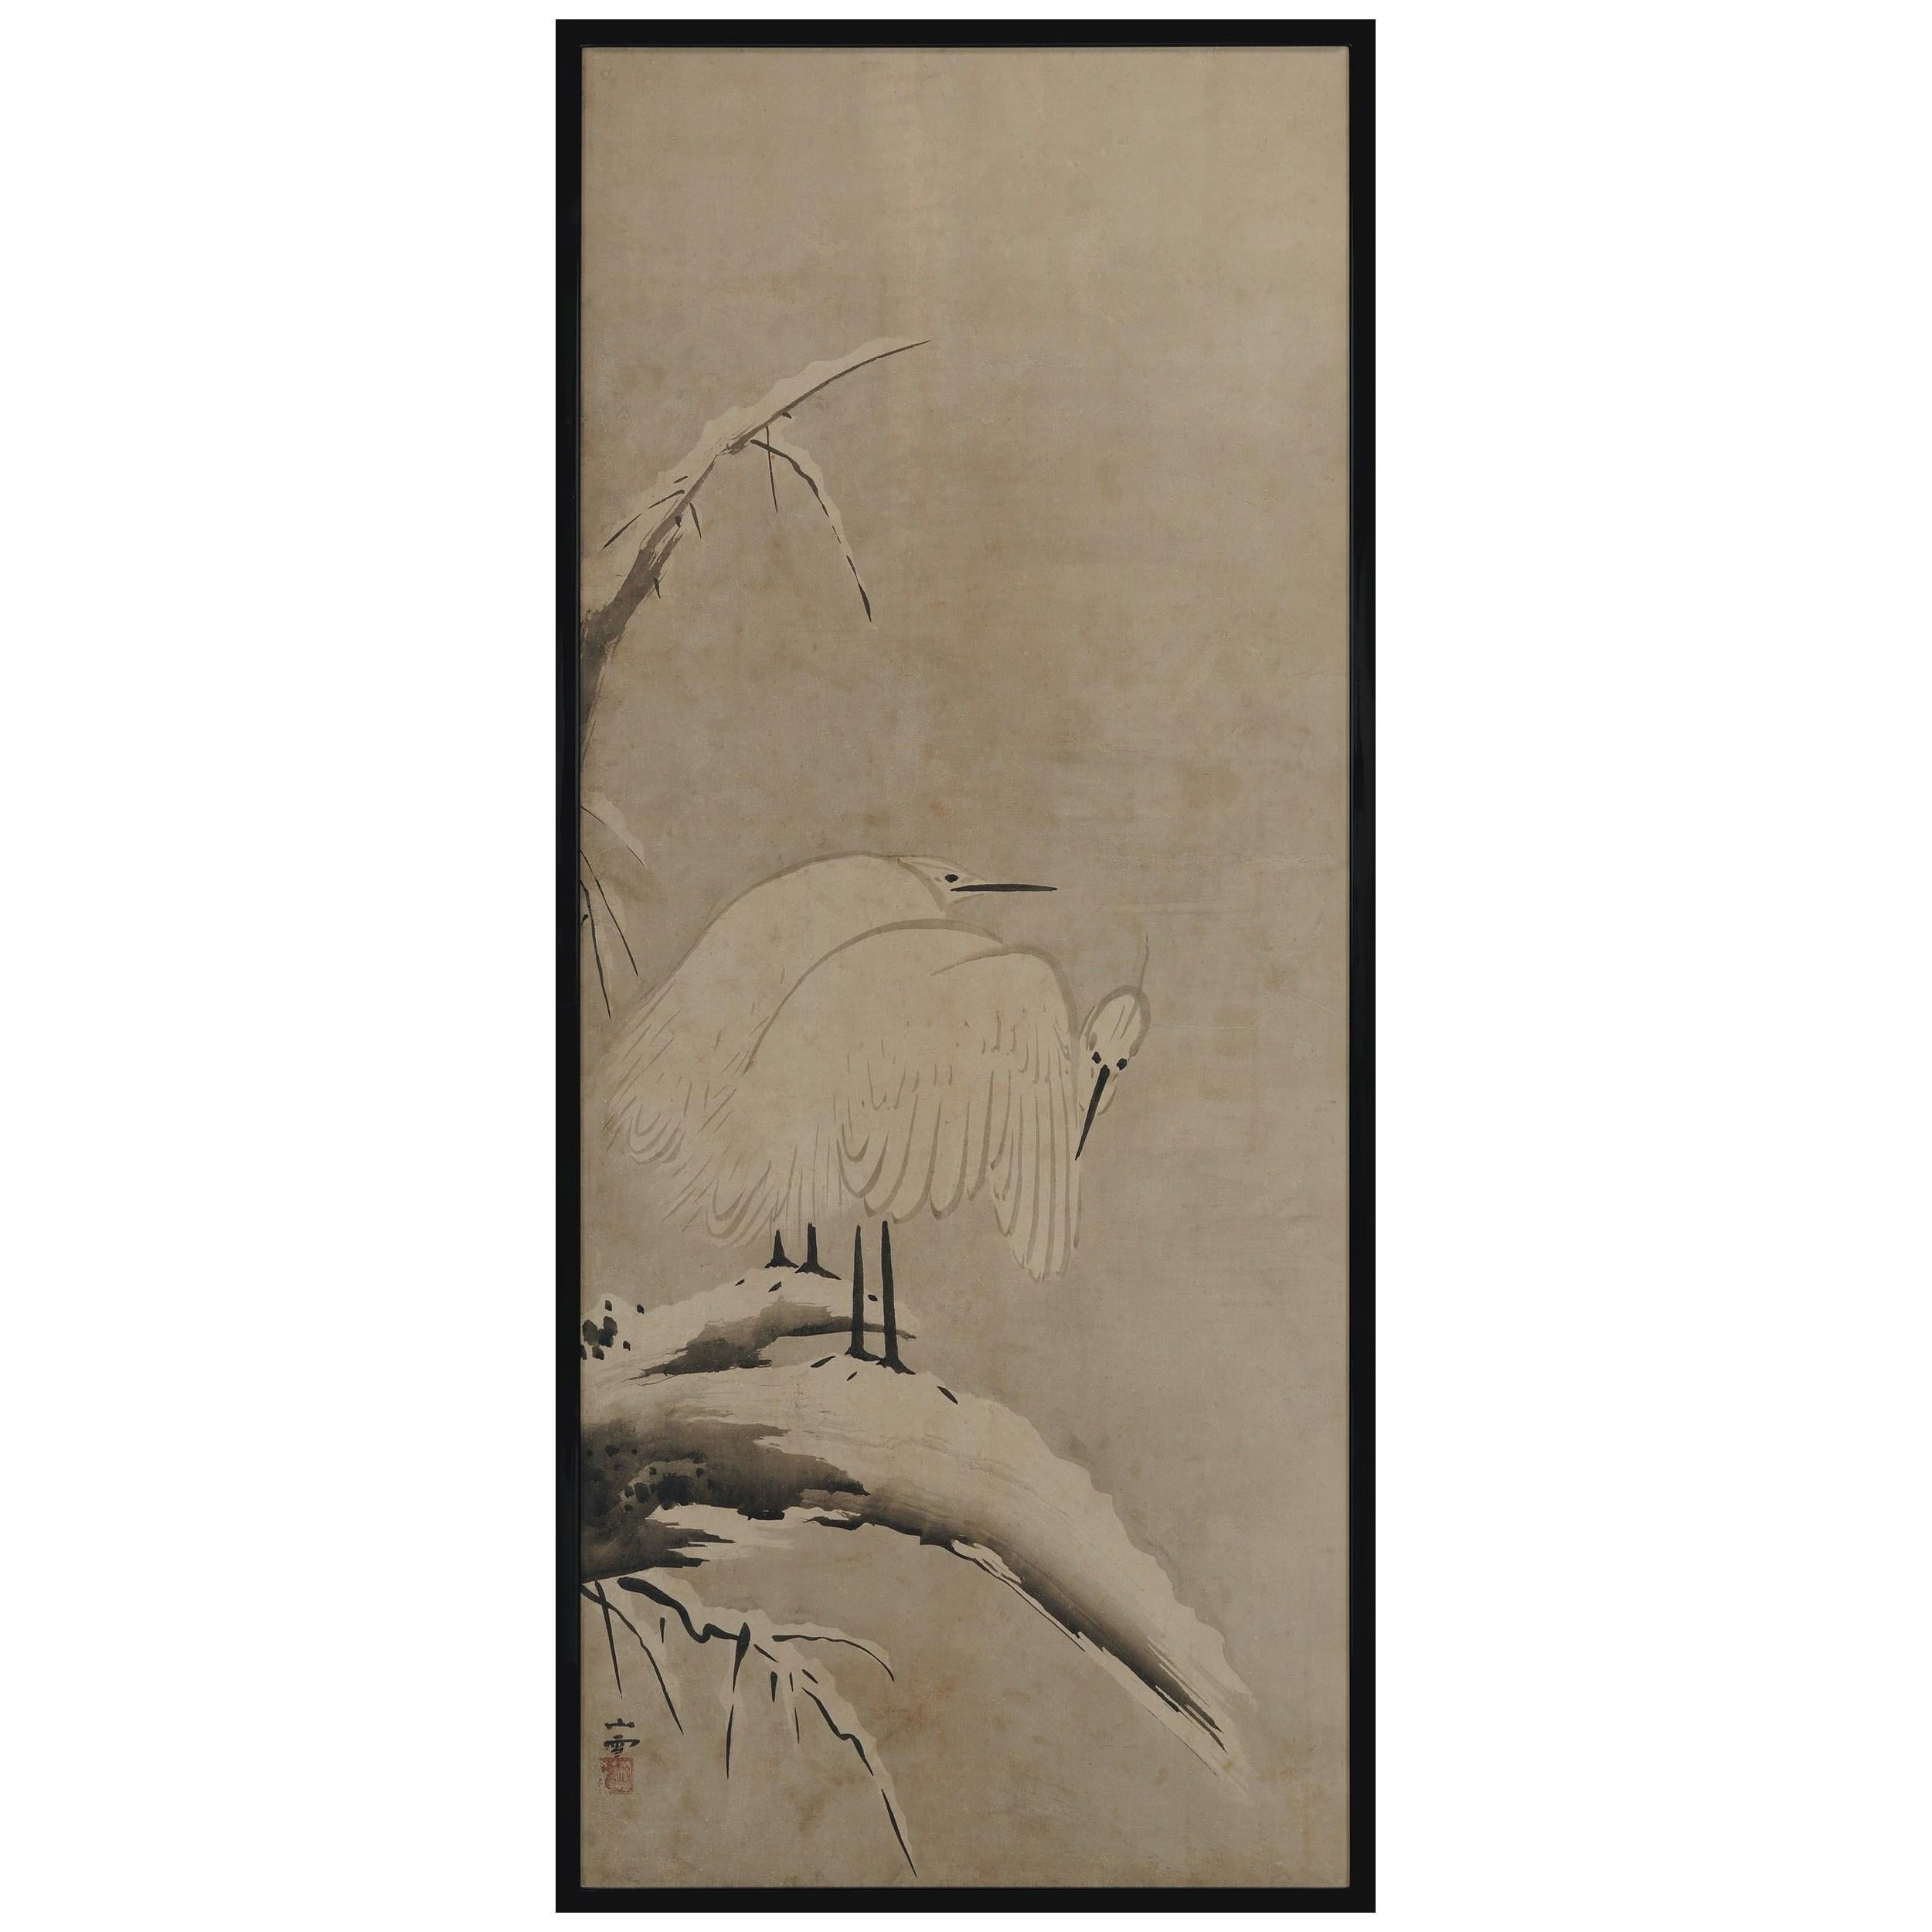 Gerahmte japanische Tafel aus dem 17. Jahrhundert von Kano Sansetsu, weiße Heronen im Schnee